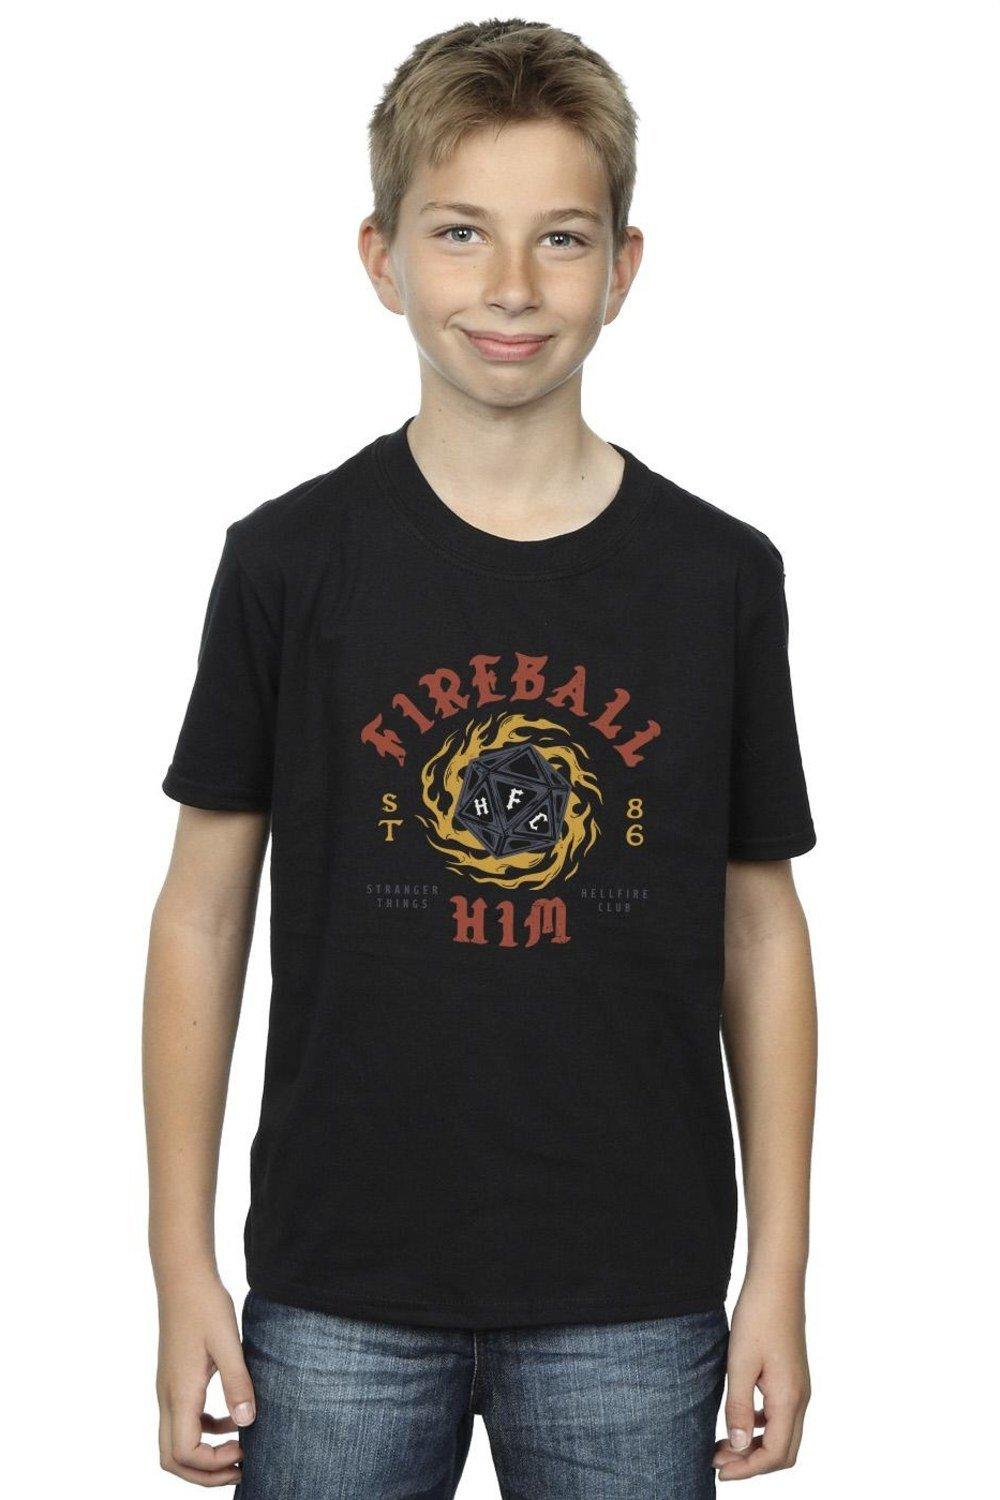 Stranger Things Fireball Dice 86 T-Shirt